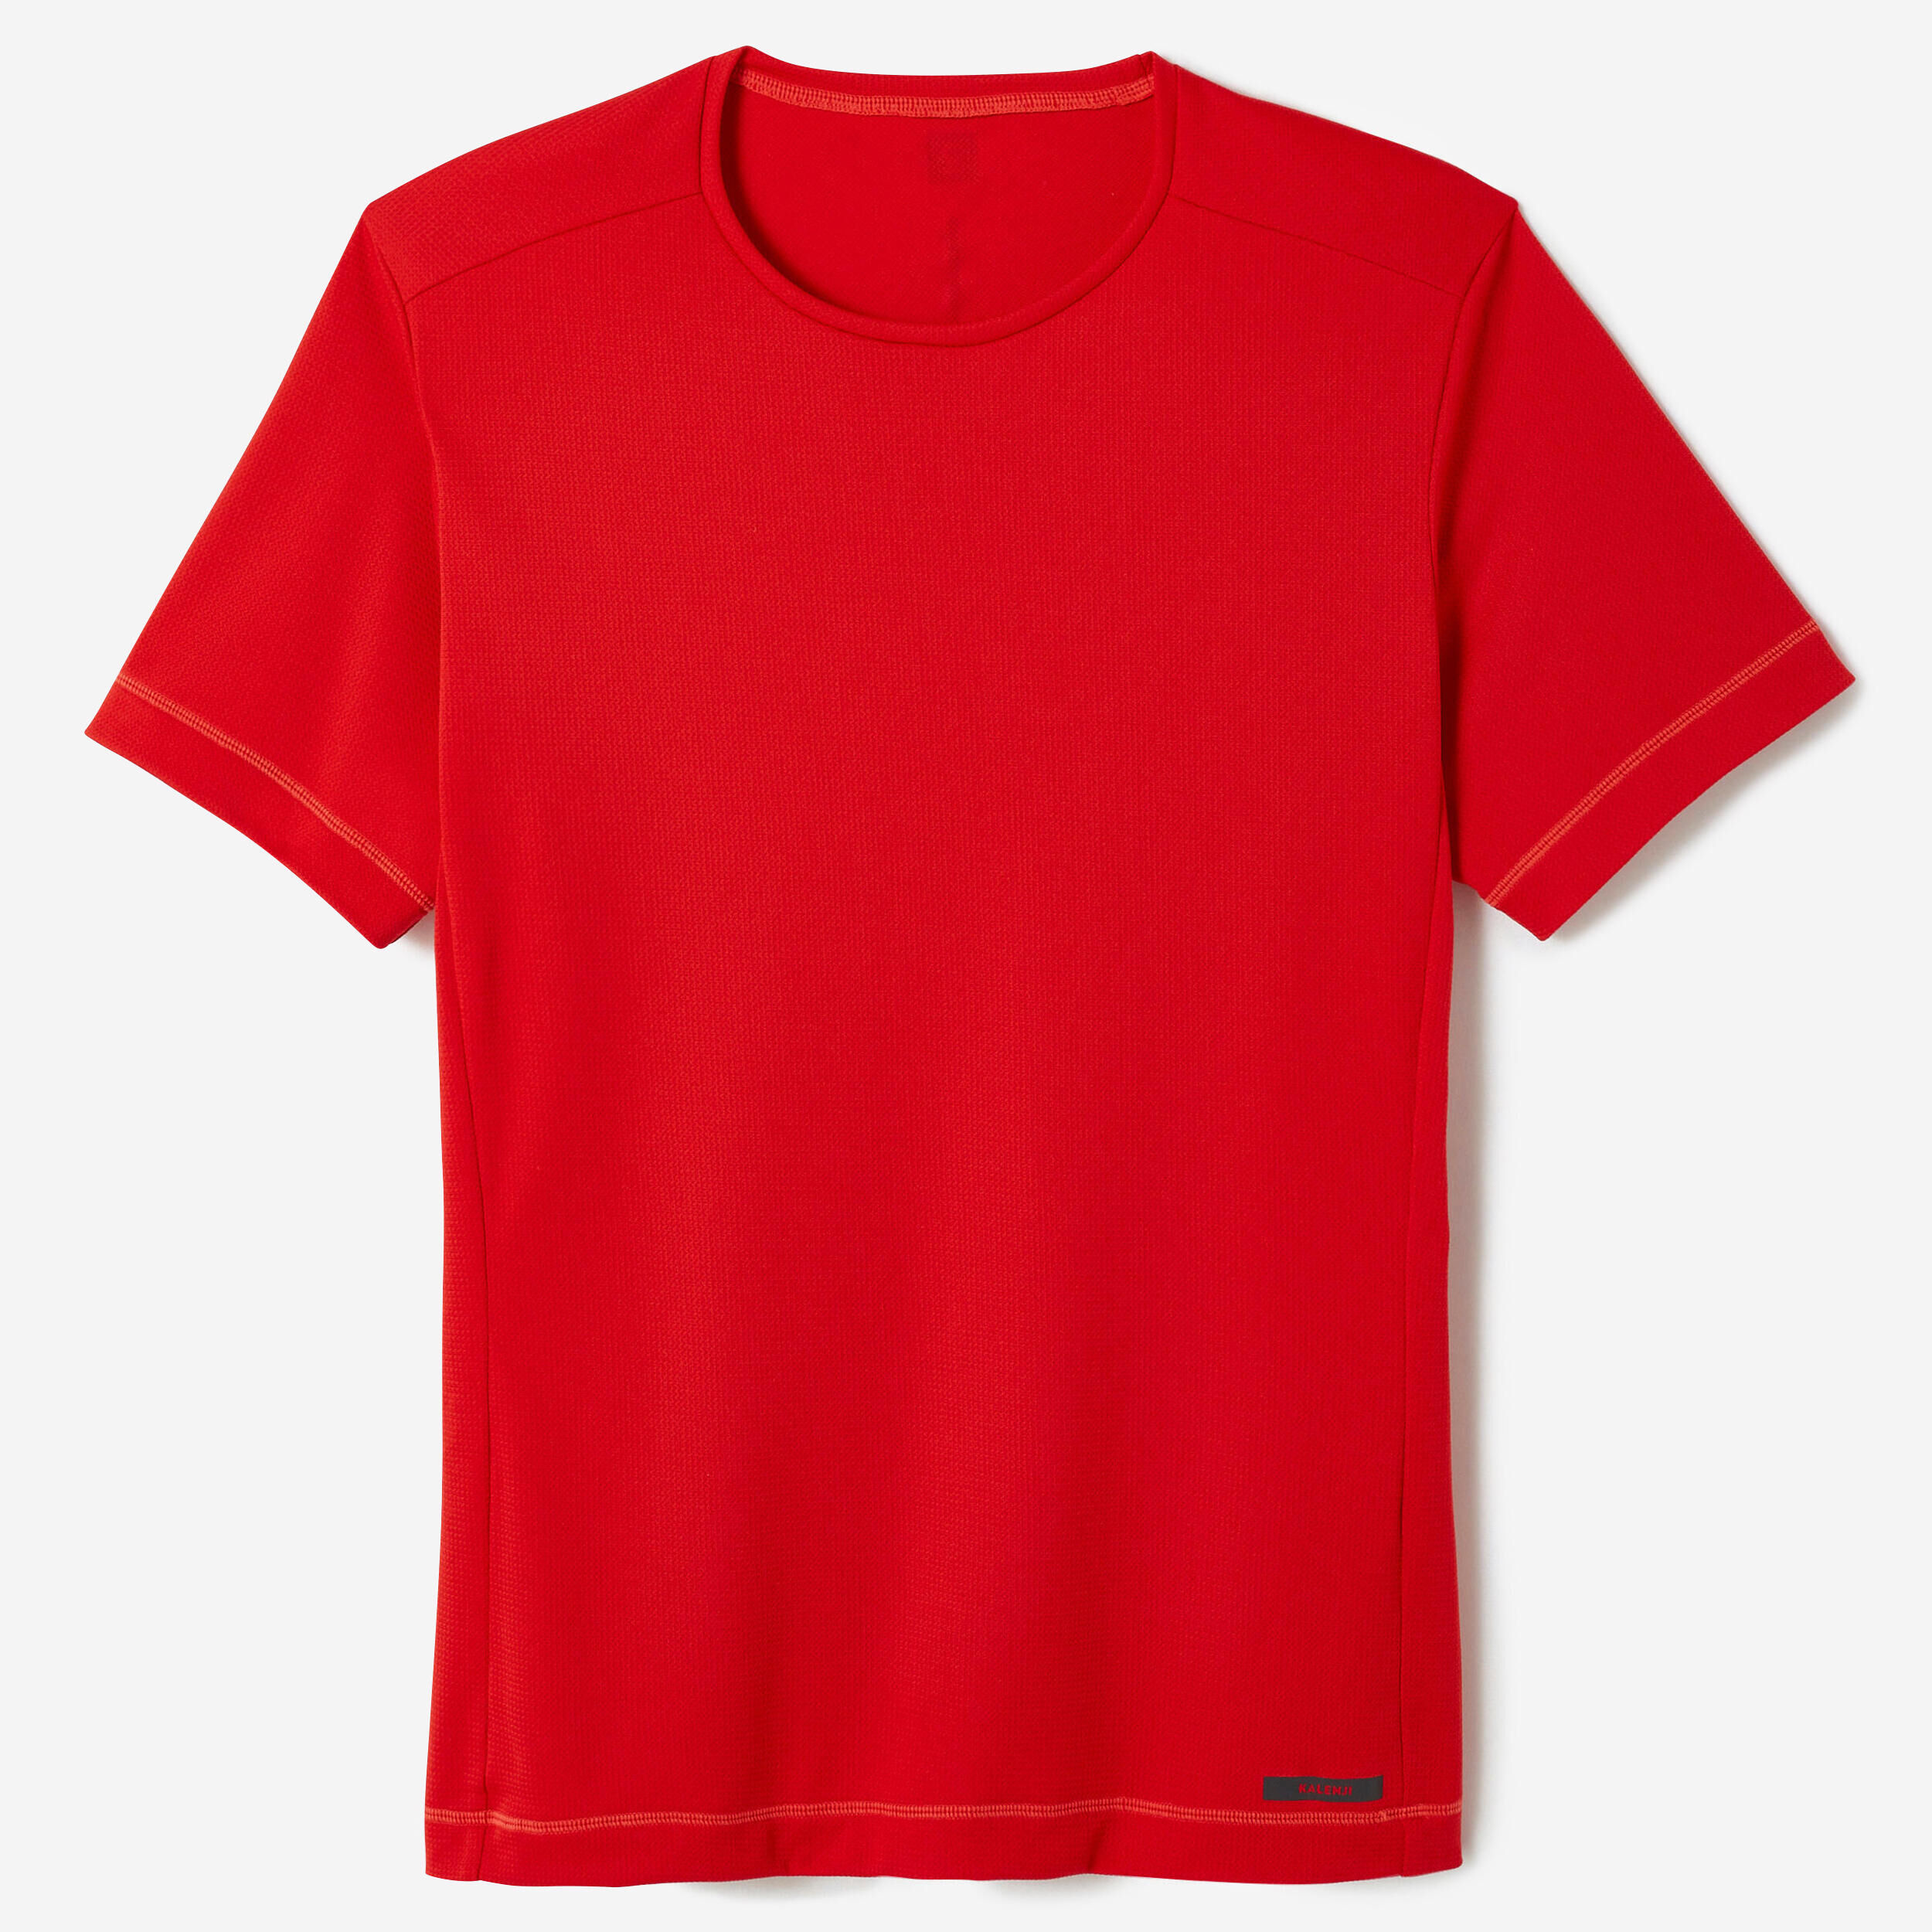 KALENJI KIPRUN 100 Dry Men's Running Breathable T-shirt - Red